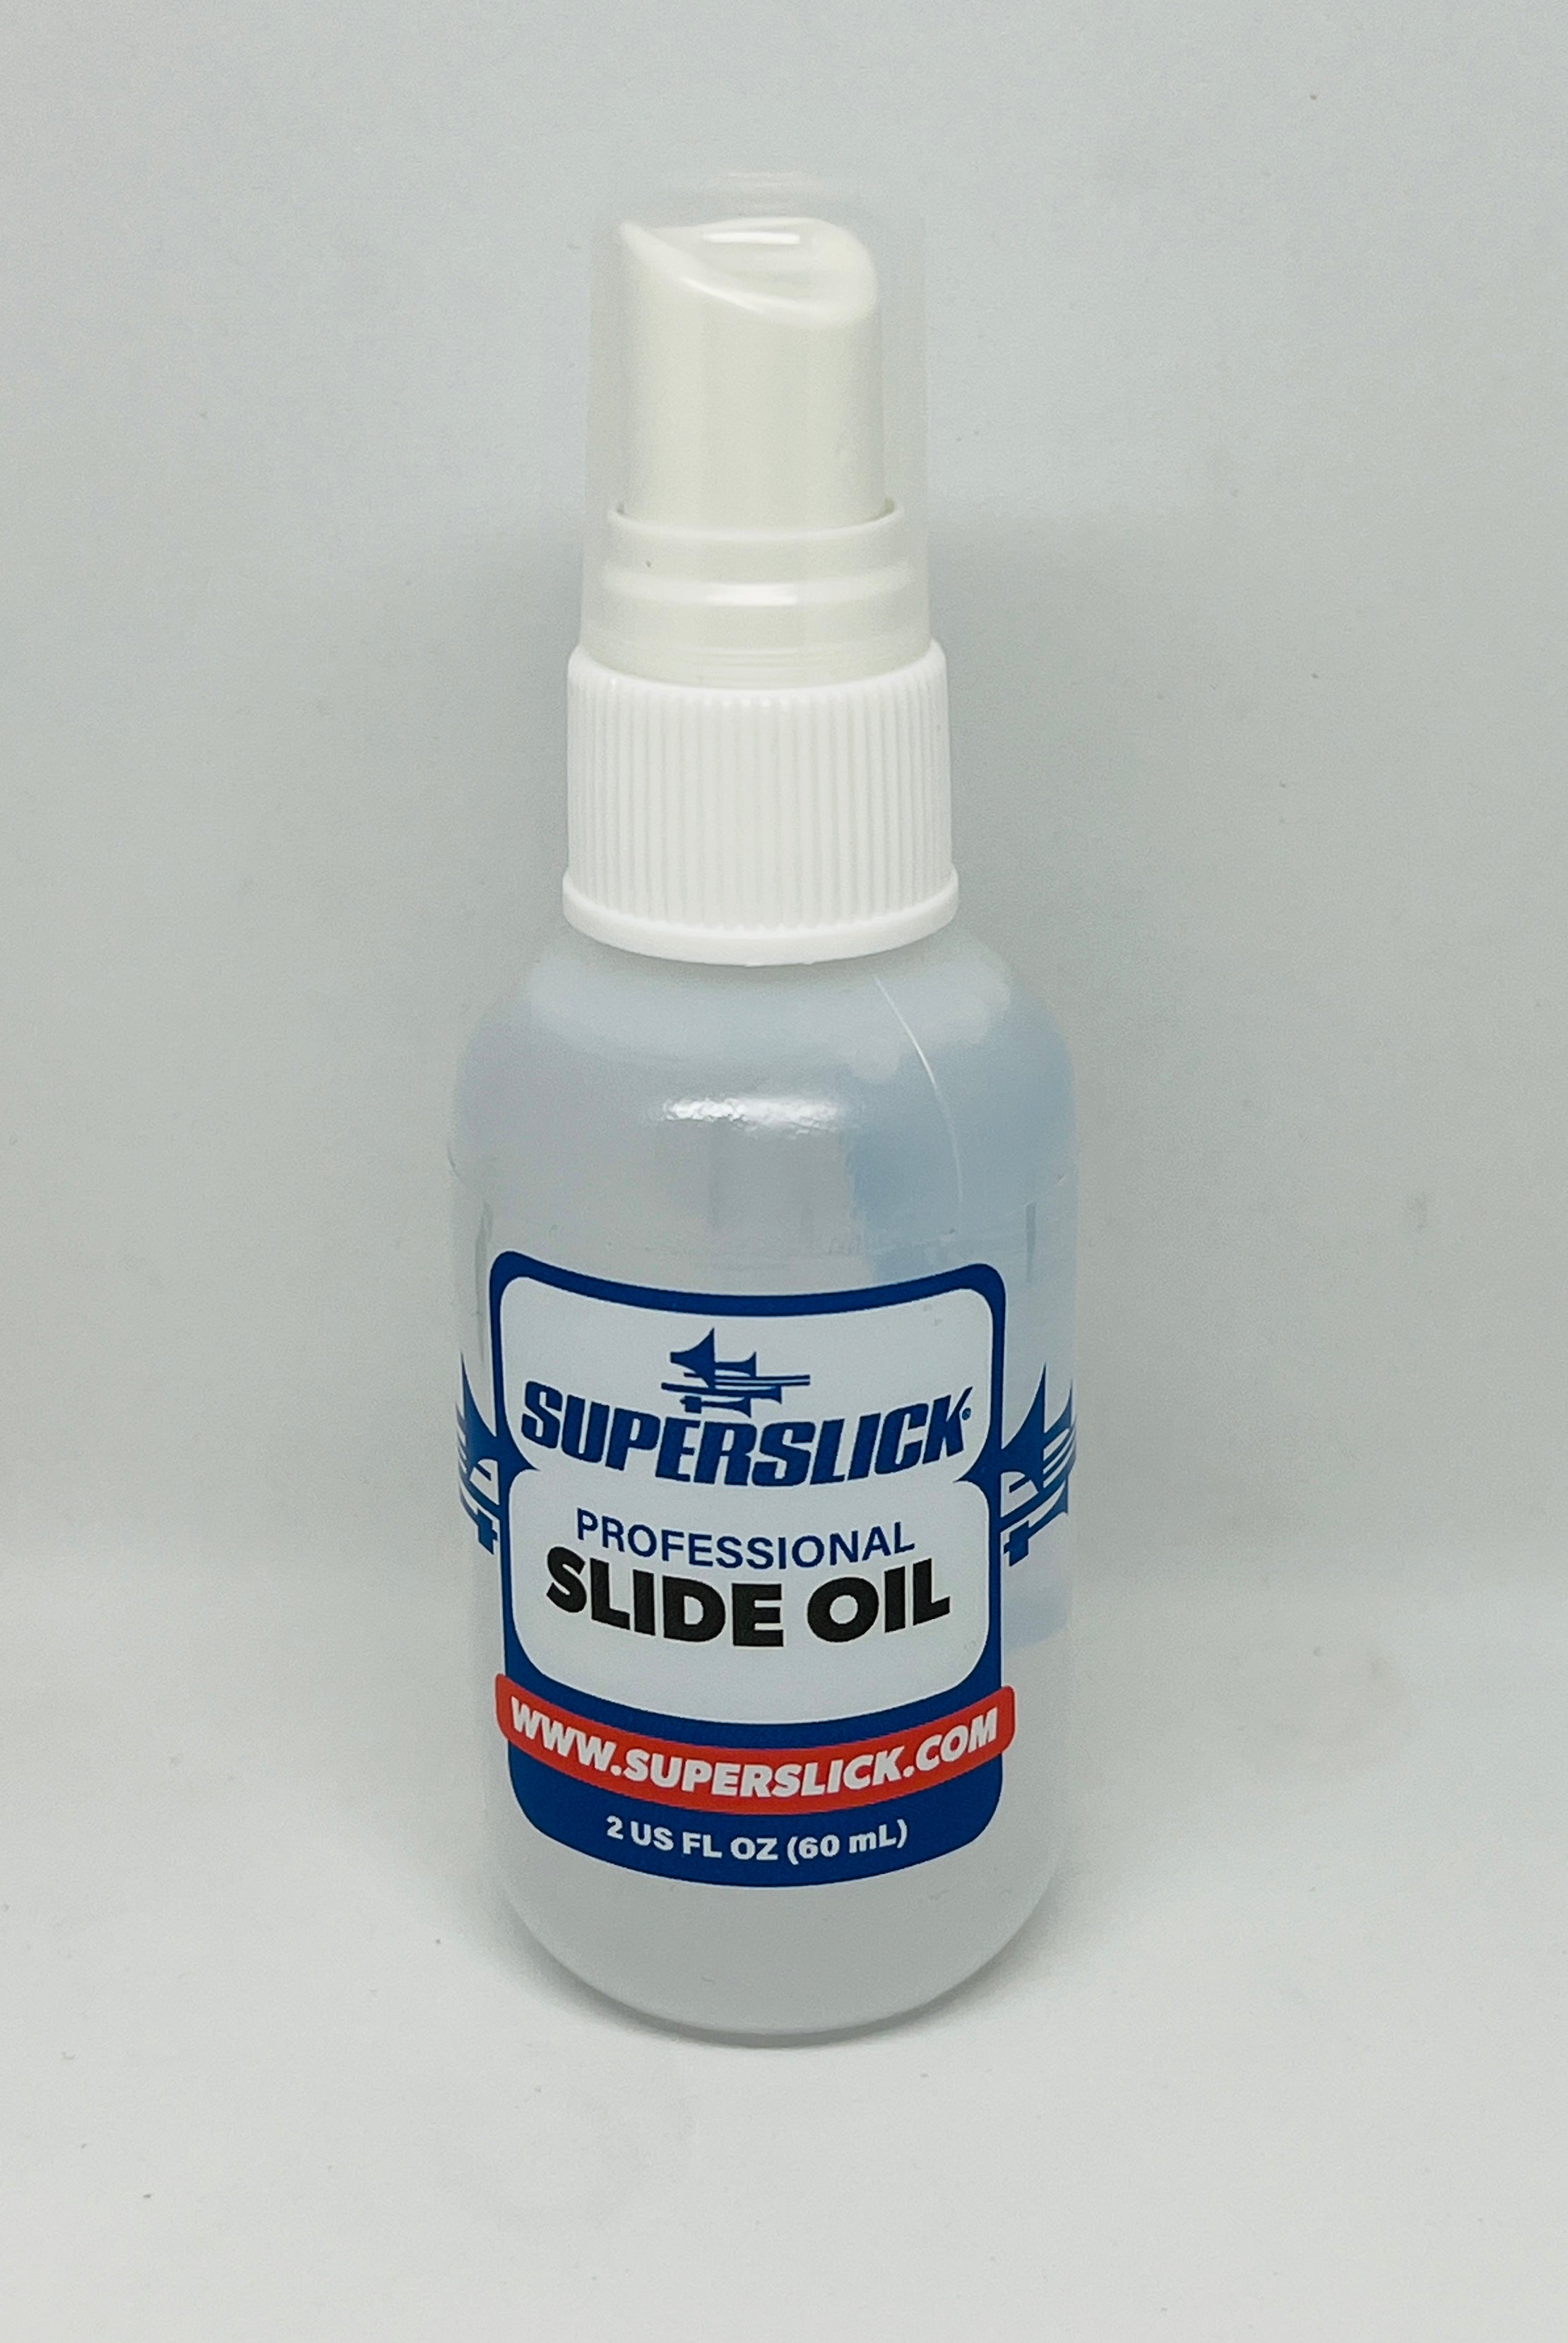 Superslick Trombone Slide Oil Light Viscosity Sprayer Top 2 oz Fast Action